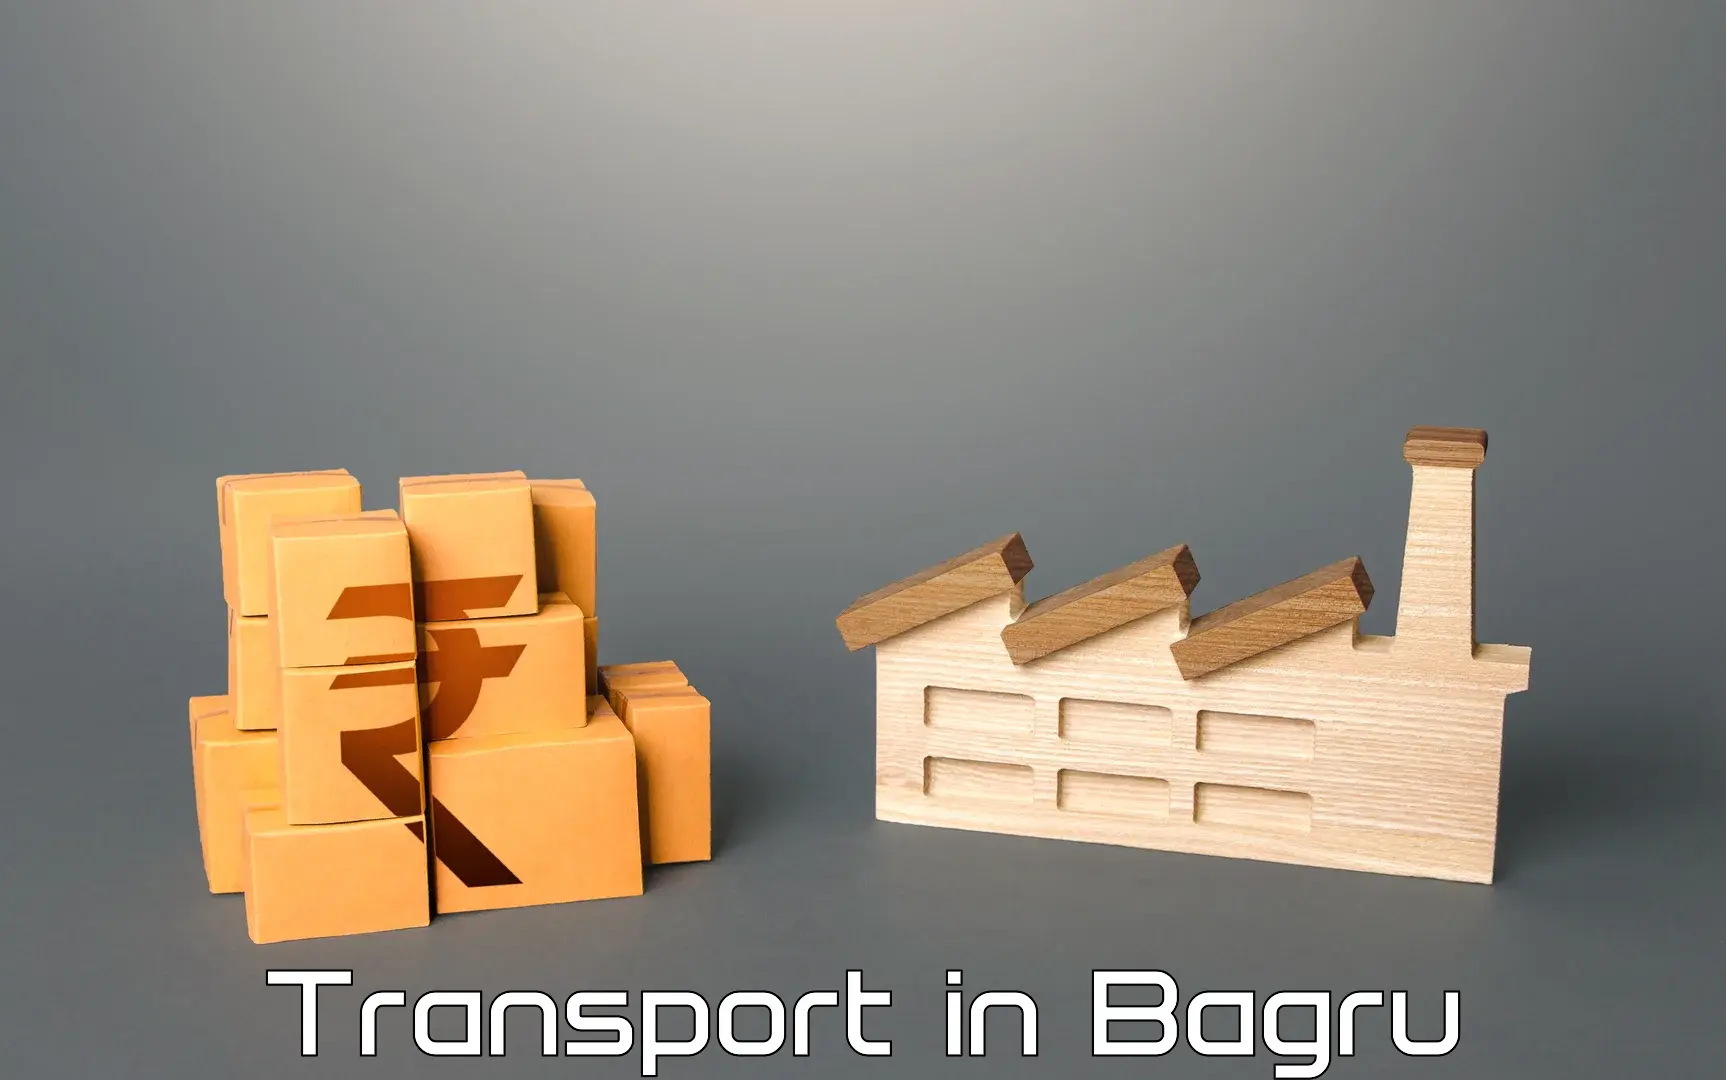 Land transport services in Bagru